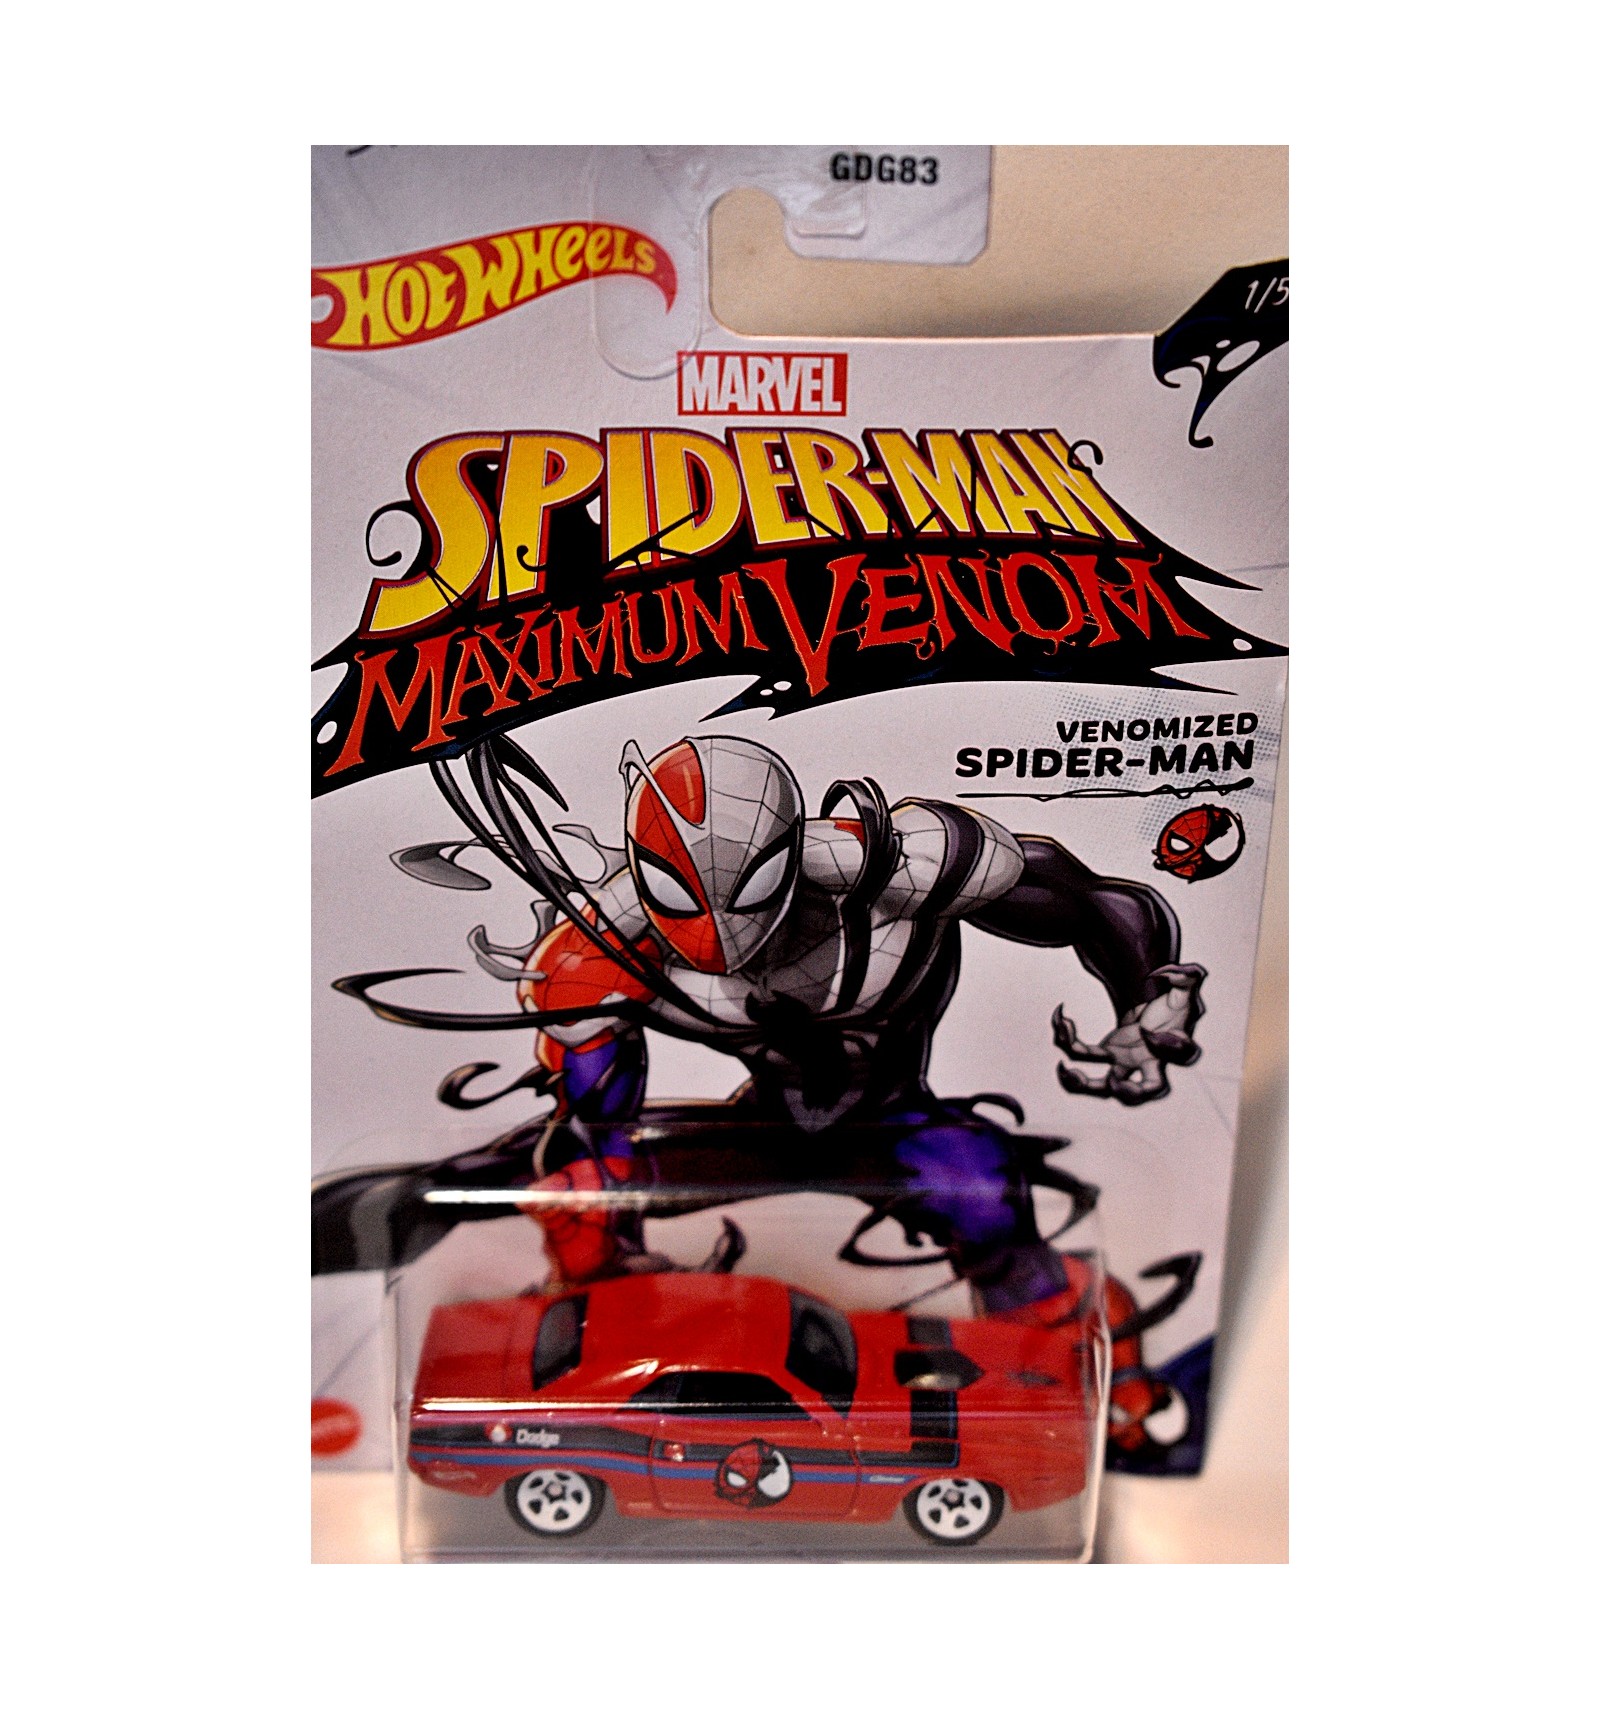 Diecast Car Official MARVEL Mattel Hot Wheels Spiderman Maximum Venom